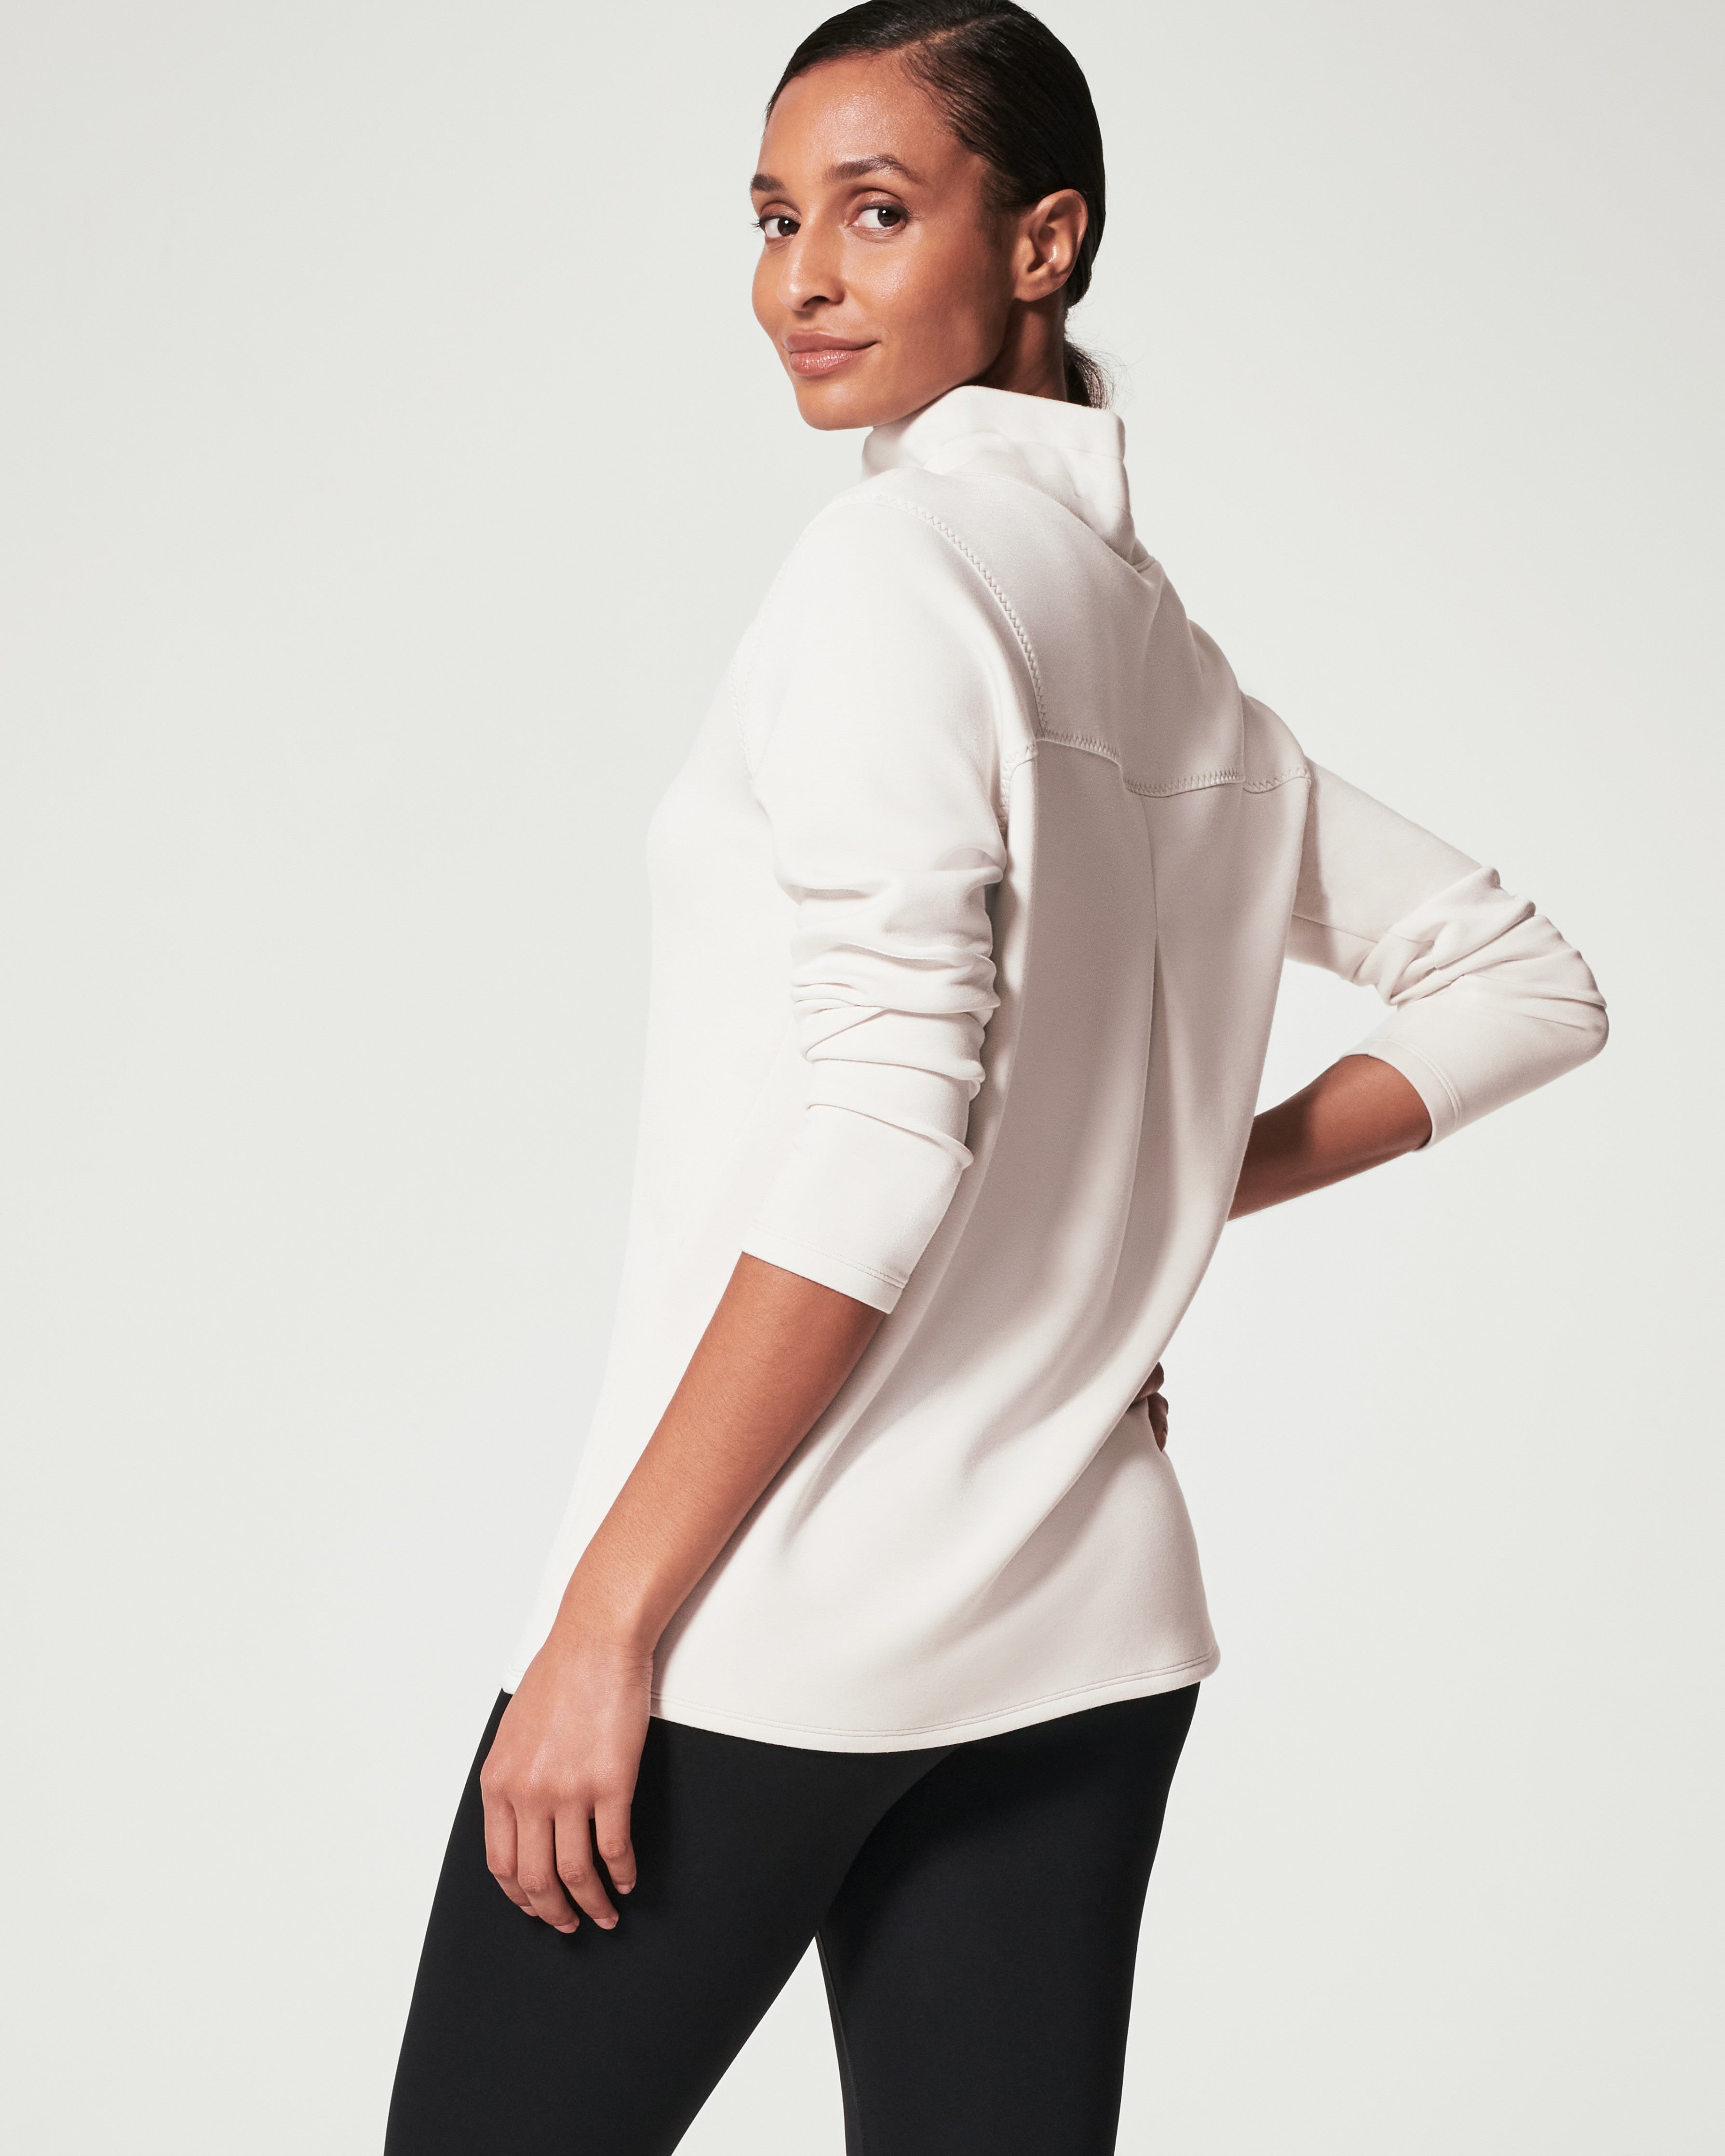 AirEssentials Women's Mock-Neck Pullover Sweatshirt